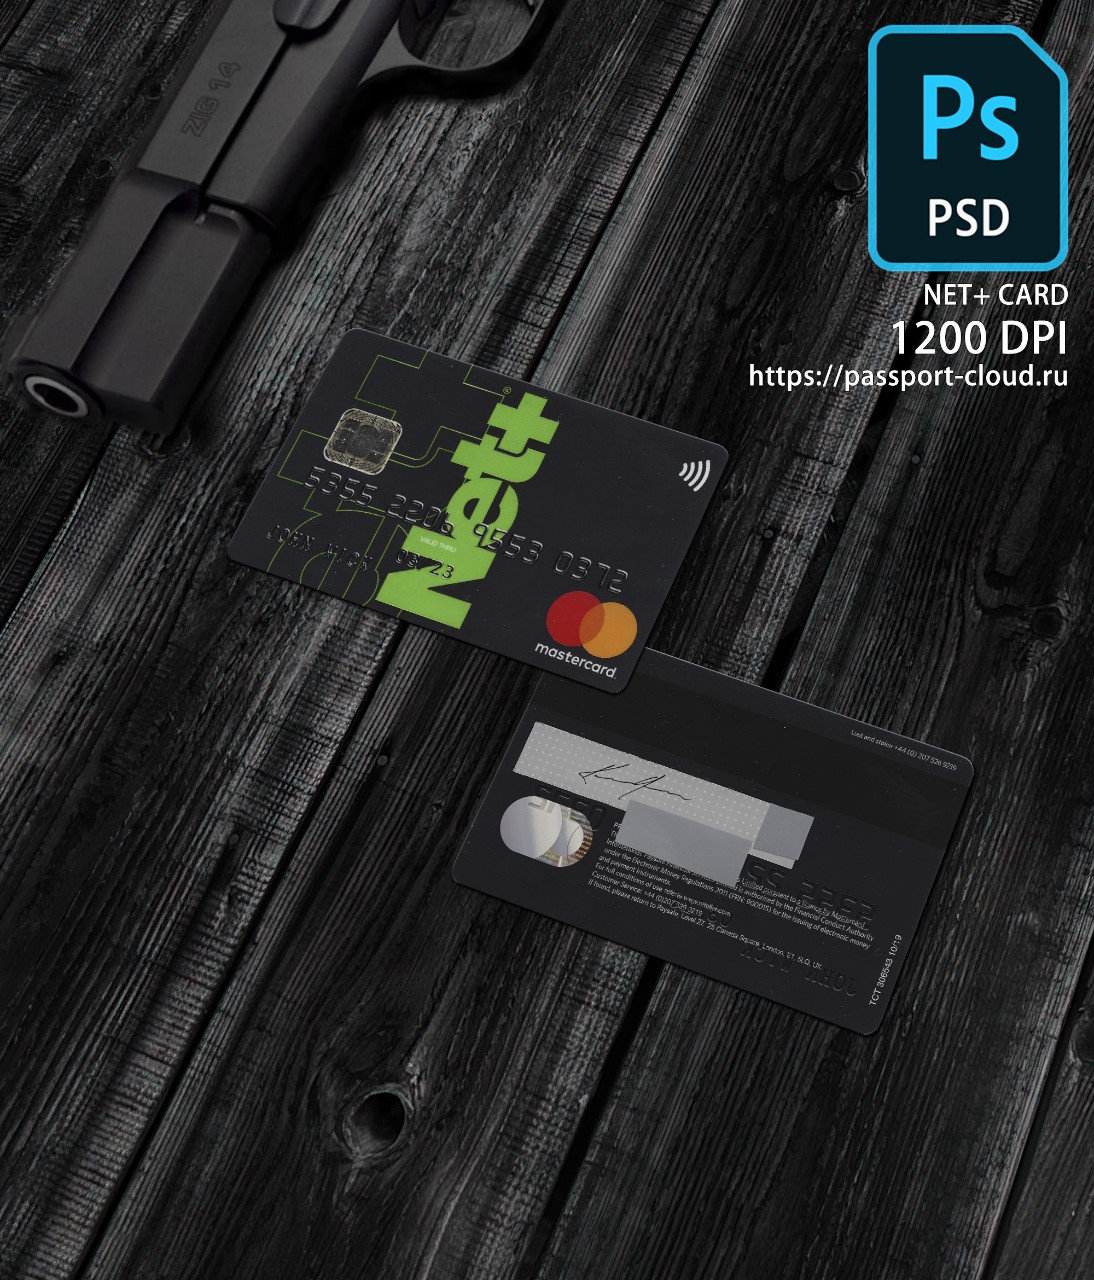 Net+ Card PSD 1